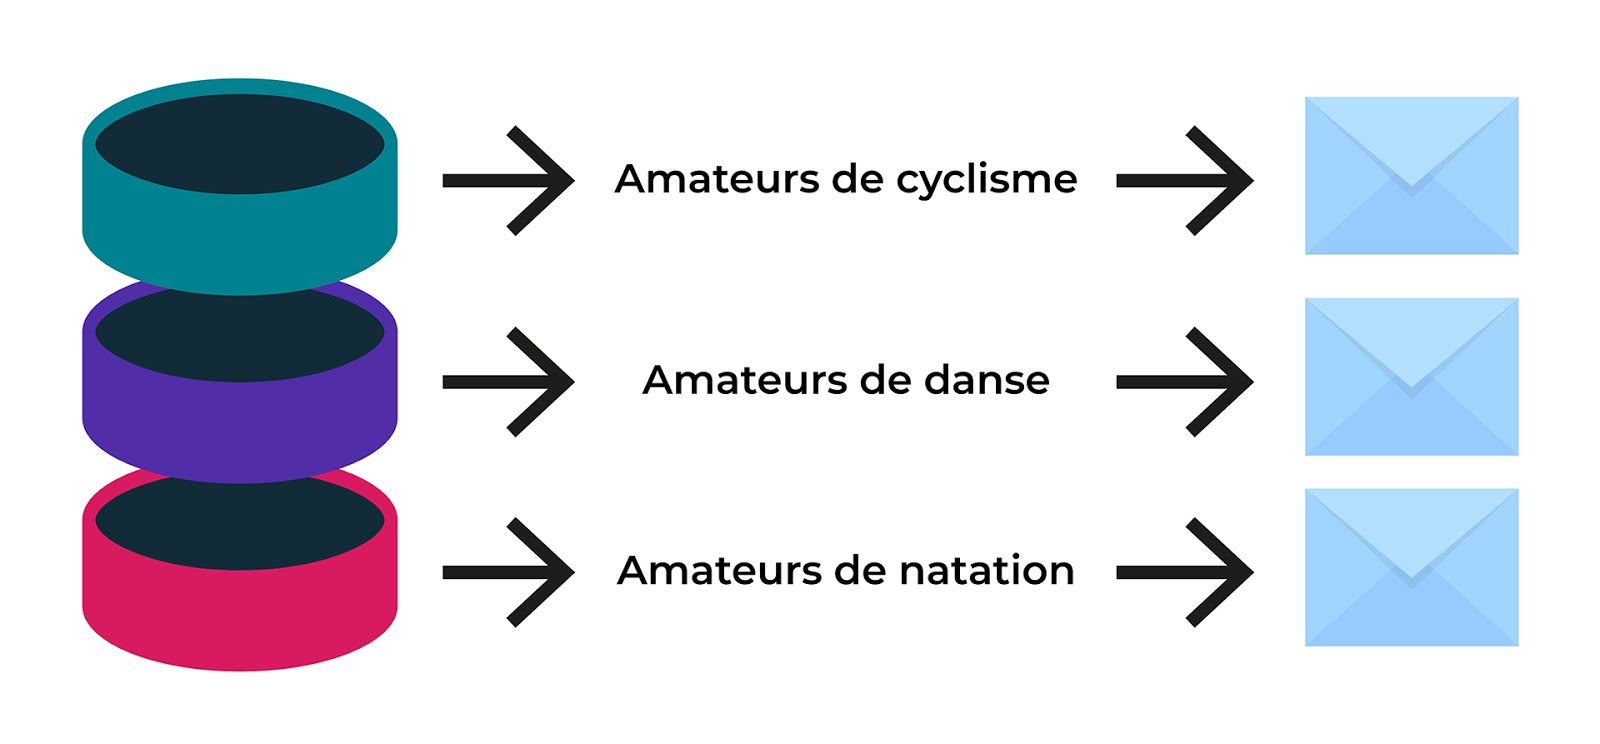 Exemple de segmentation avec 3 profils d'un magasin de sport : l'amateur de cyclisme, l'amateur de danse et l'amateur de natation.